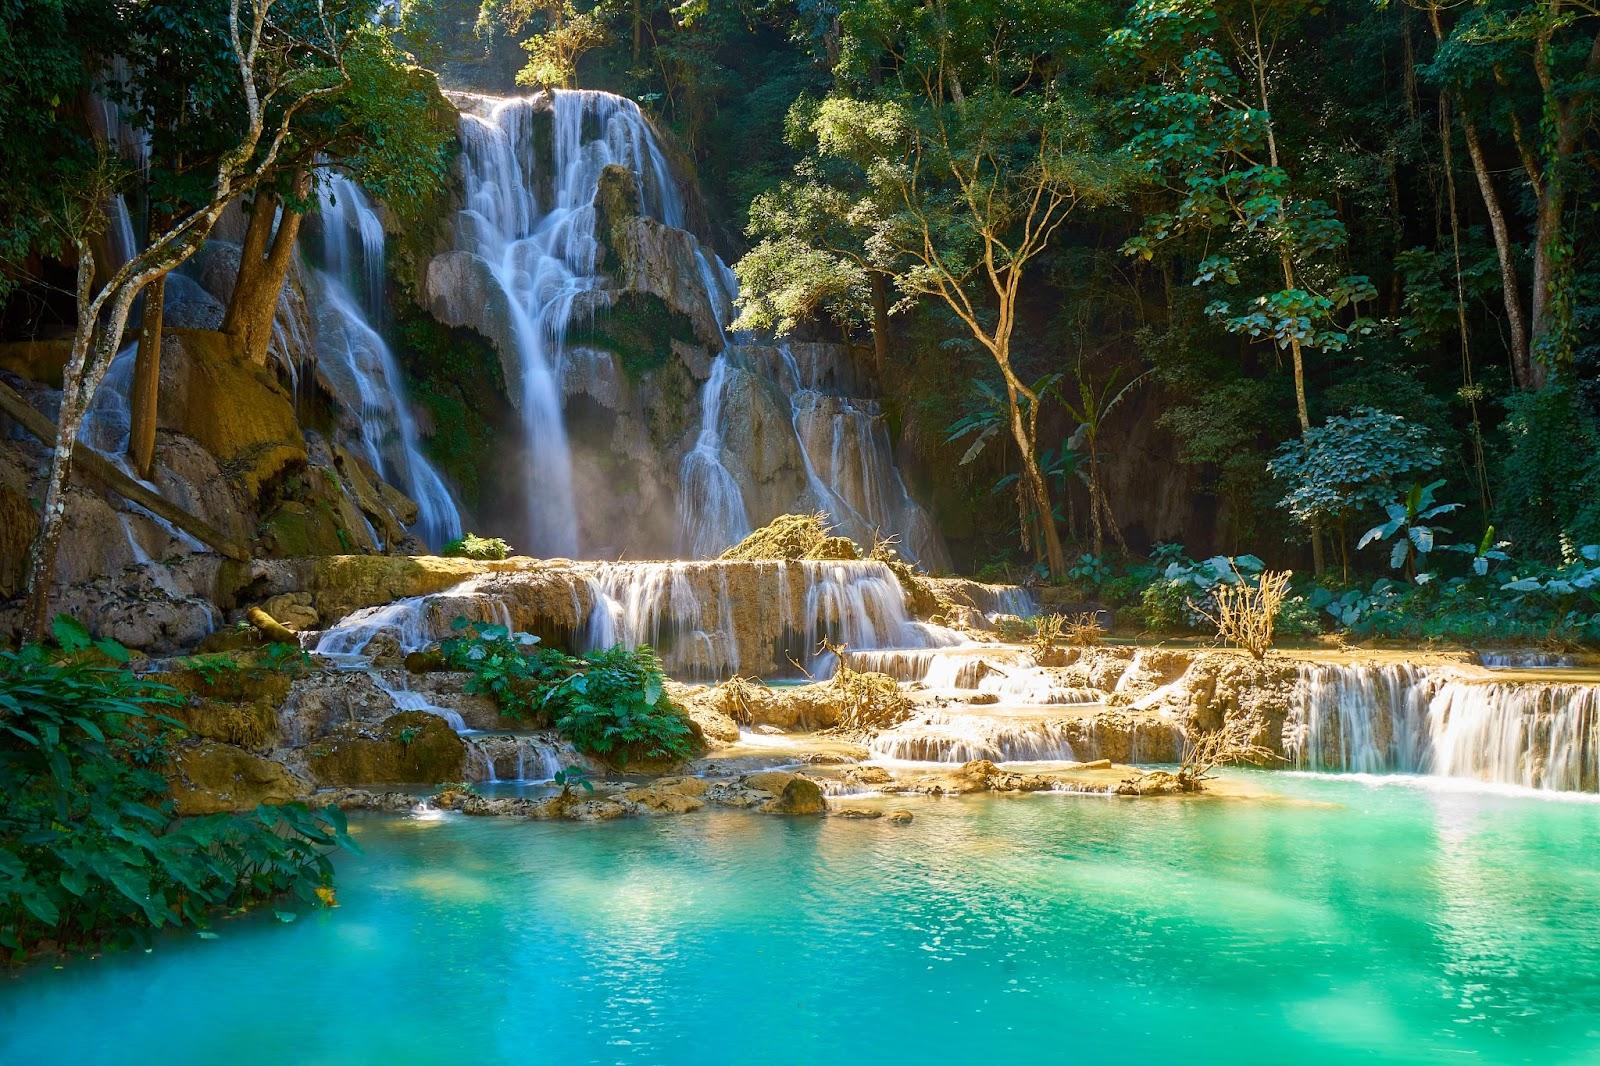 Kuang Si Waterfalls in Luang Probang Laos